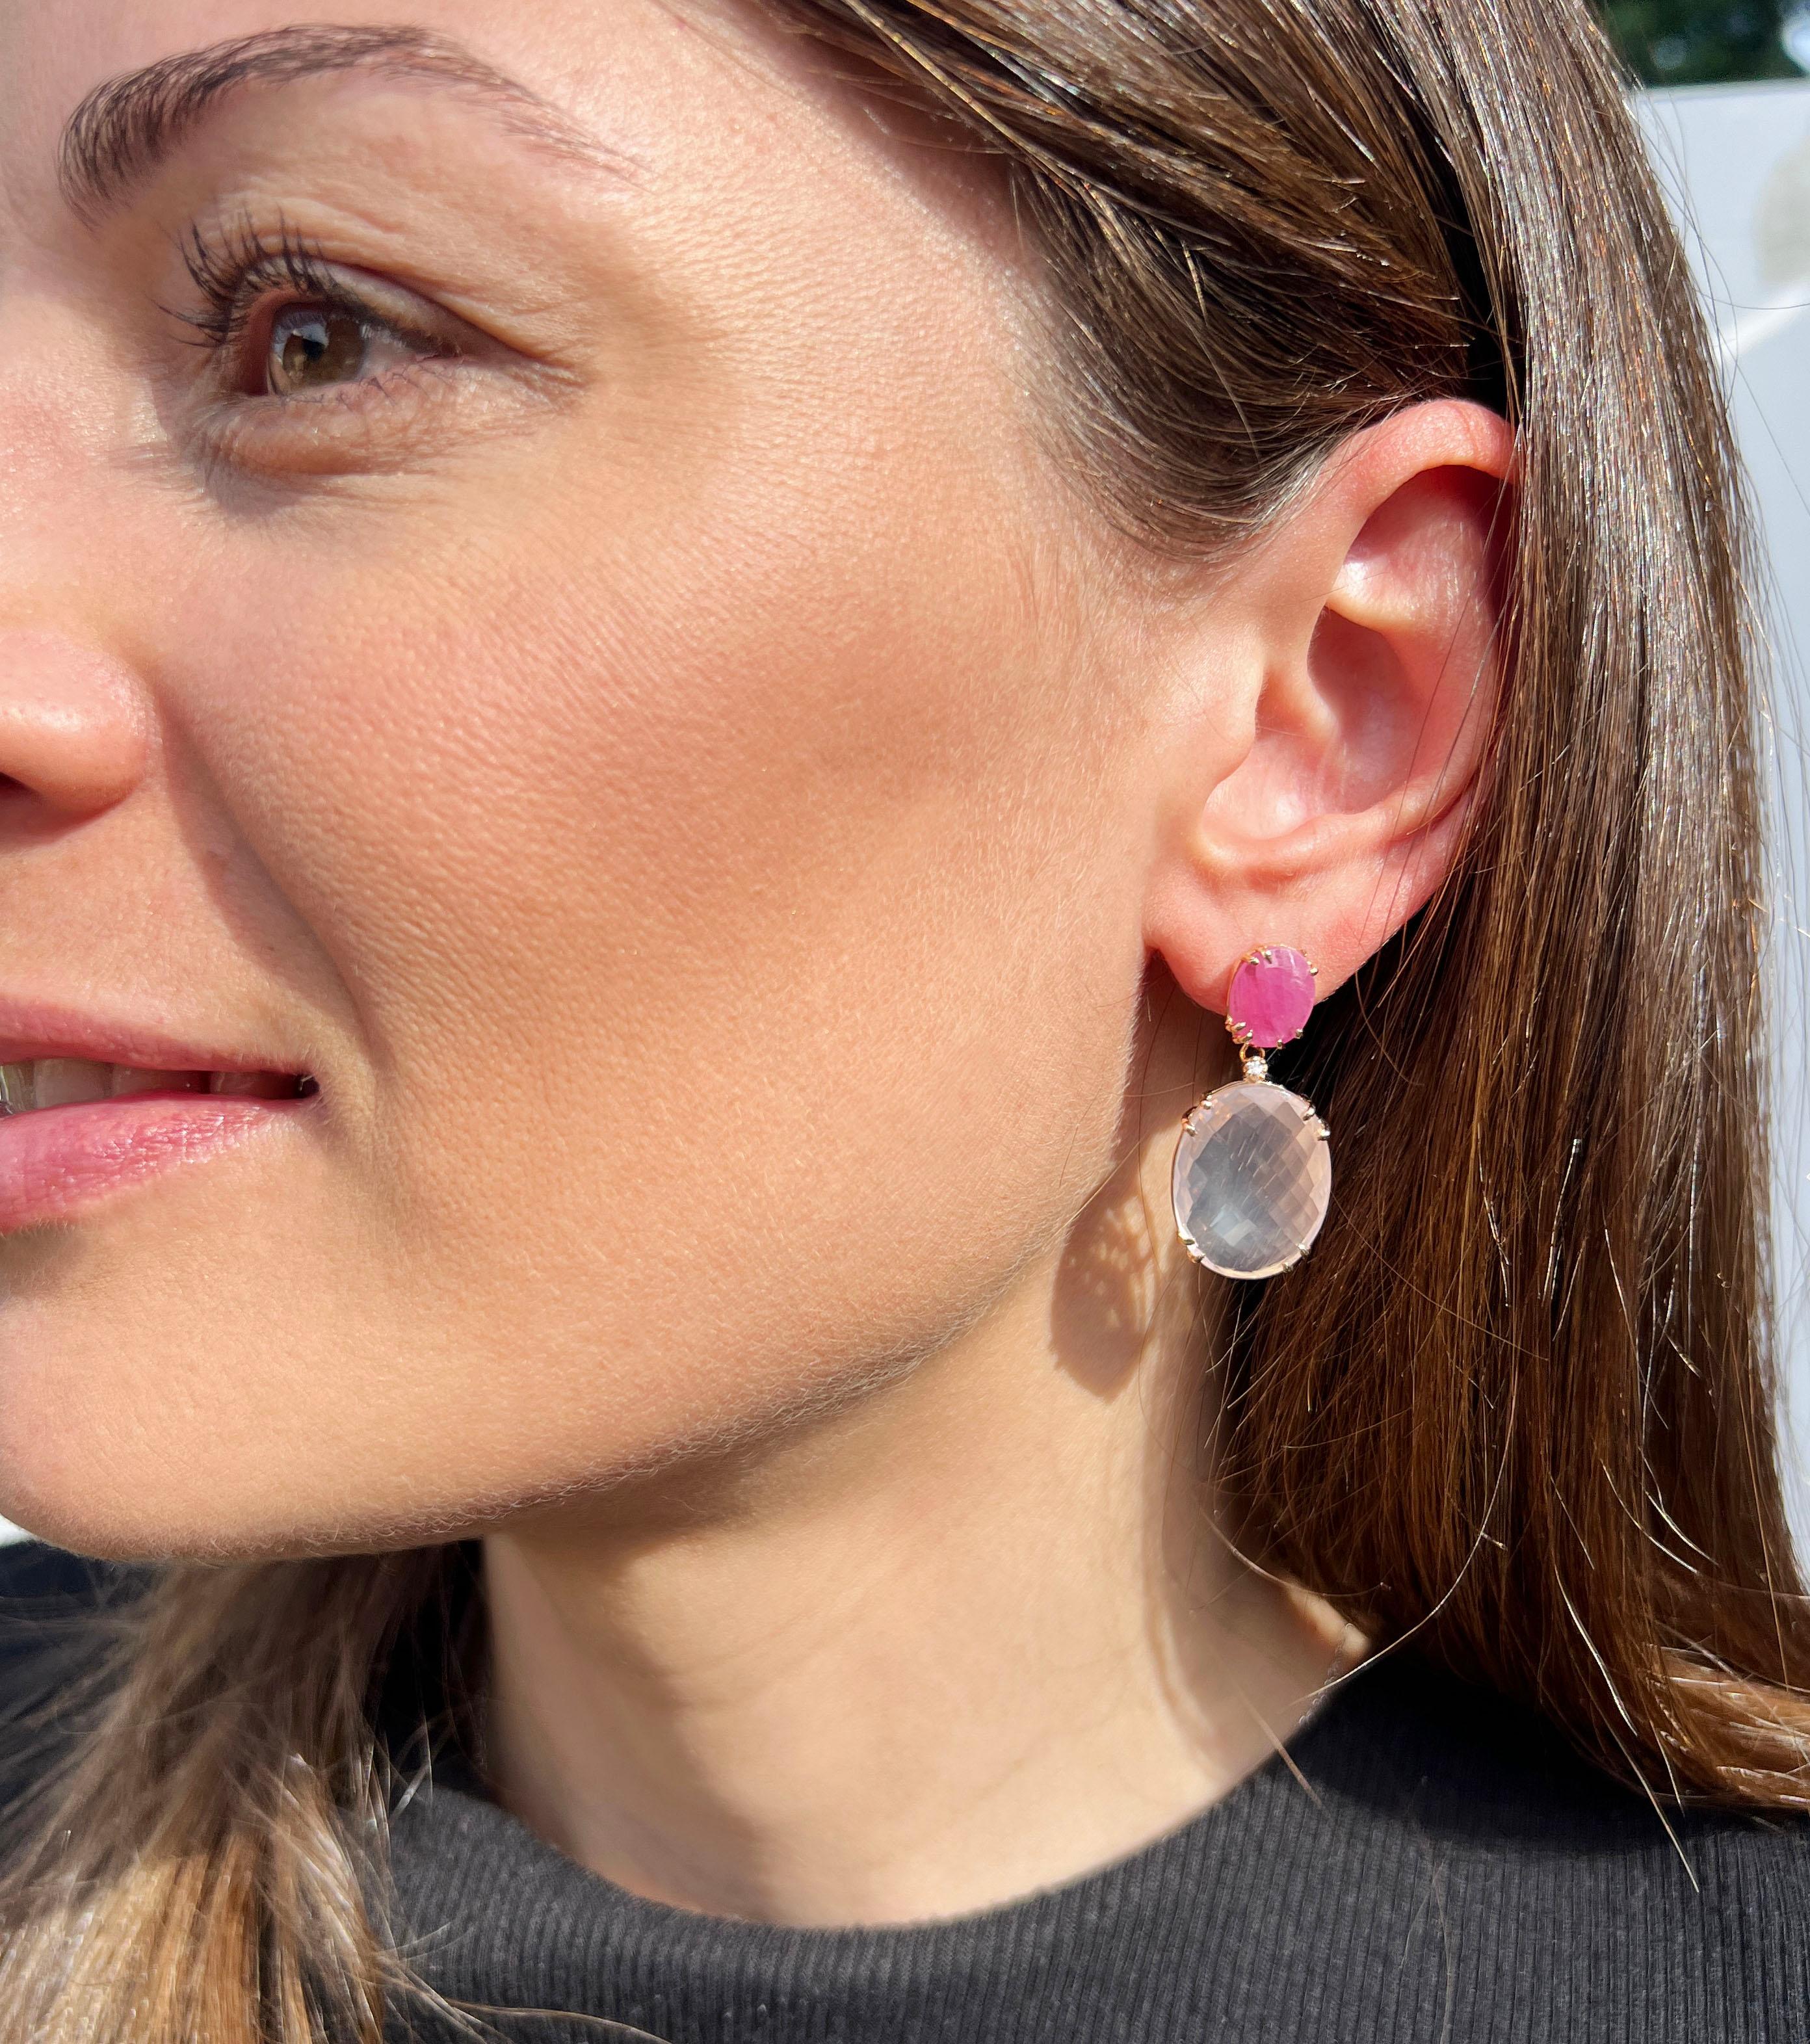 Zeitlose und besondere Ohrringe in verschiedenen Formen mit rosa Quarz und dunkelrosa natürlichen Saphiren. 
Finden Sie die Ohrringe nicht auch toll? Wir lieben sie sehr, wir lieben die Farbe. Wunderschöne Ohrringe mit speziell geschliffenem Quarz